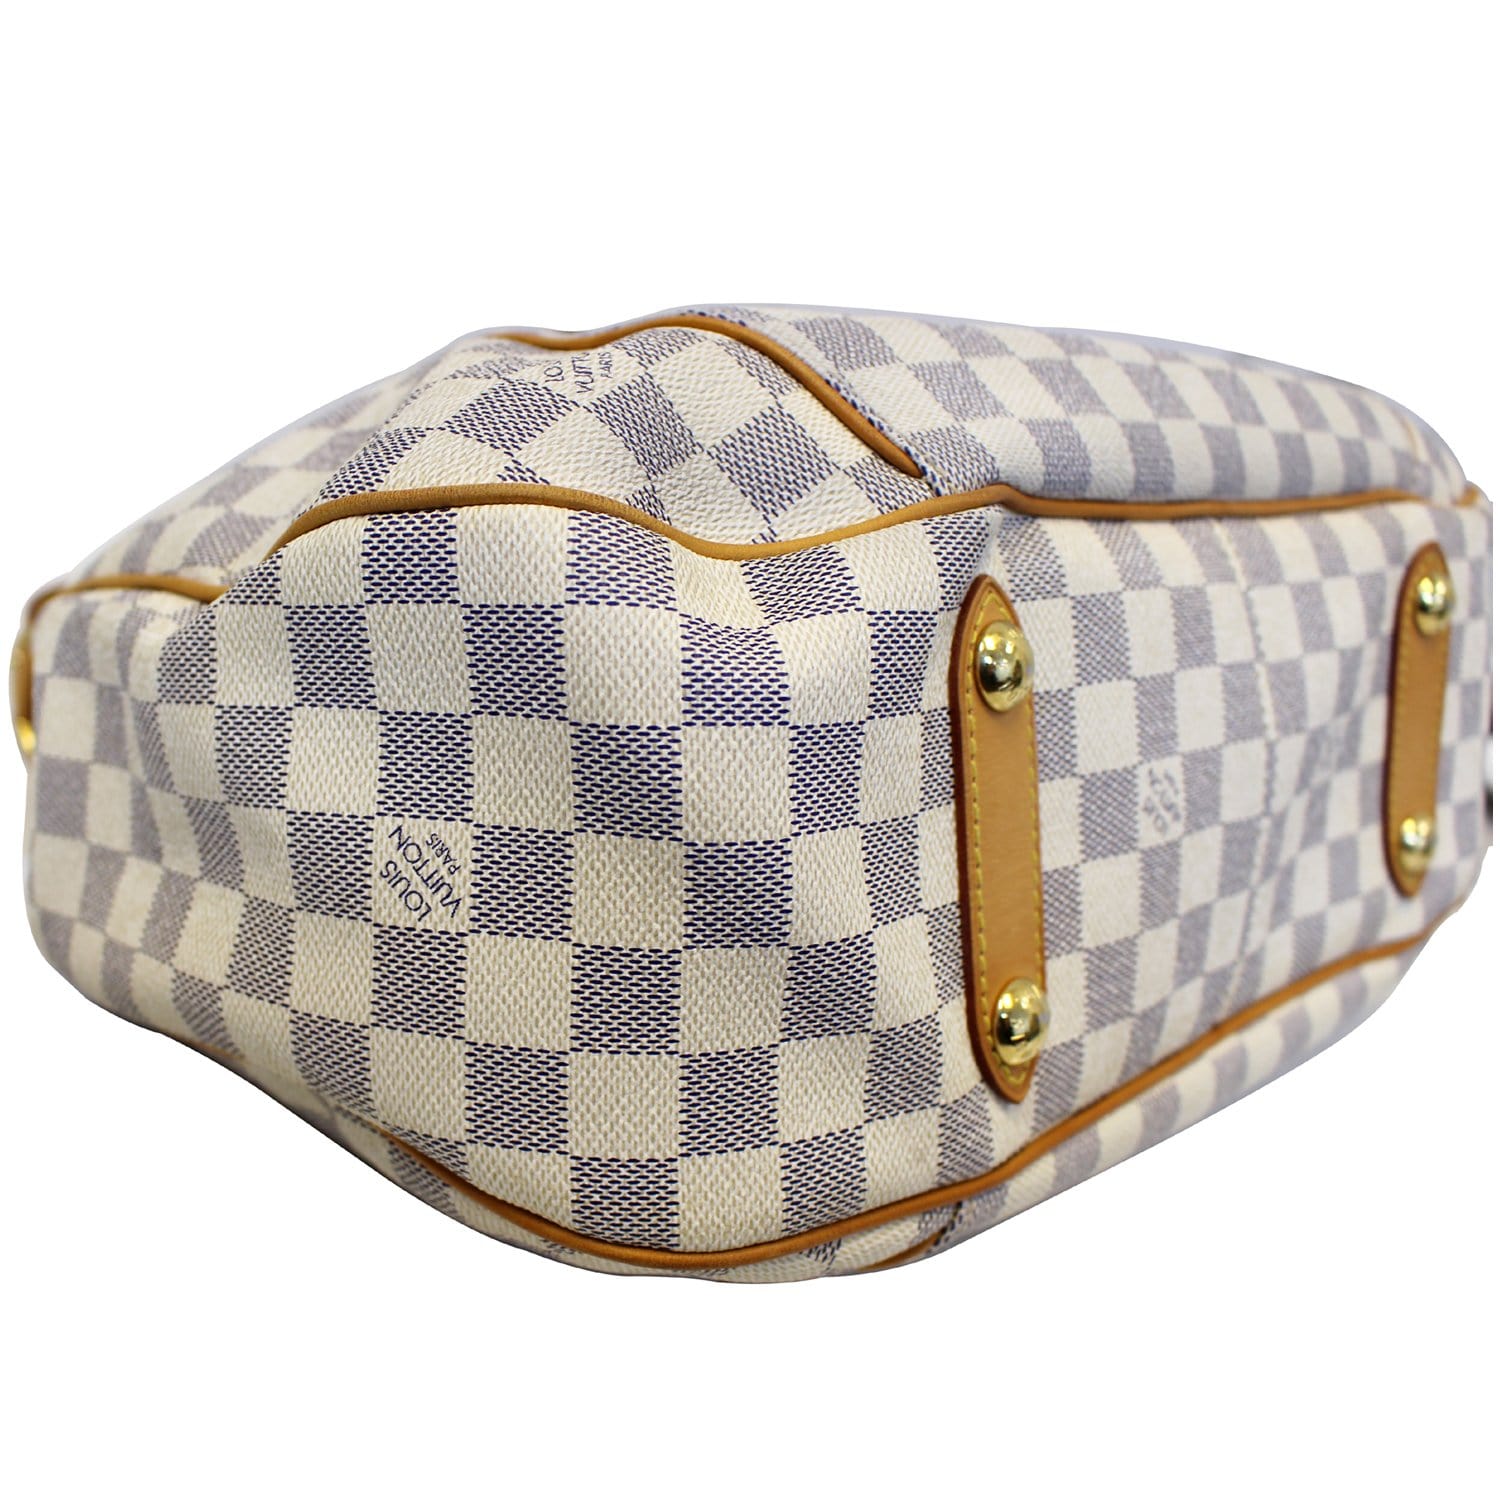 Authentic LOUIS VUITTON Galliera PM Damier Azur Tote Shoulder Bag Purse  #47821